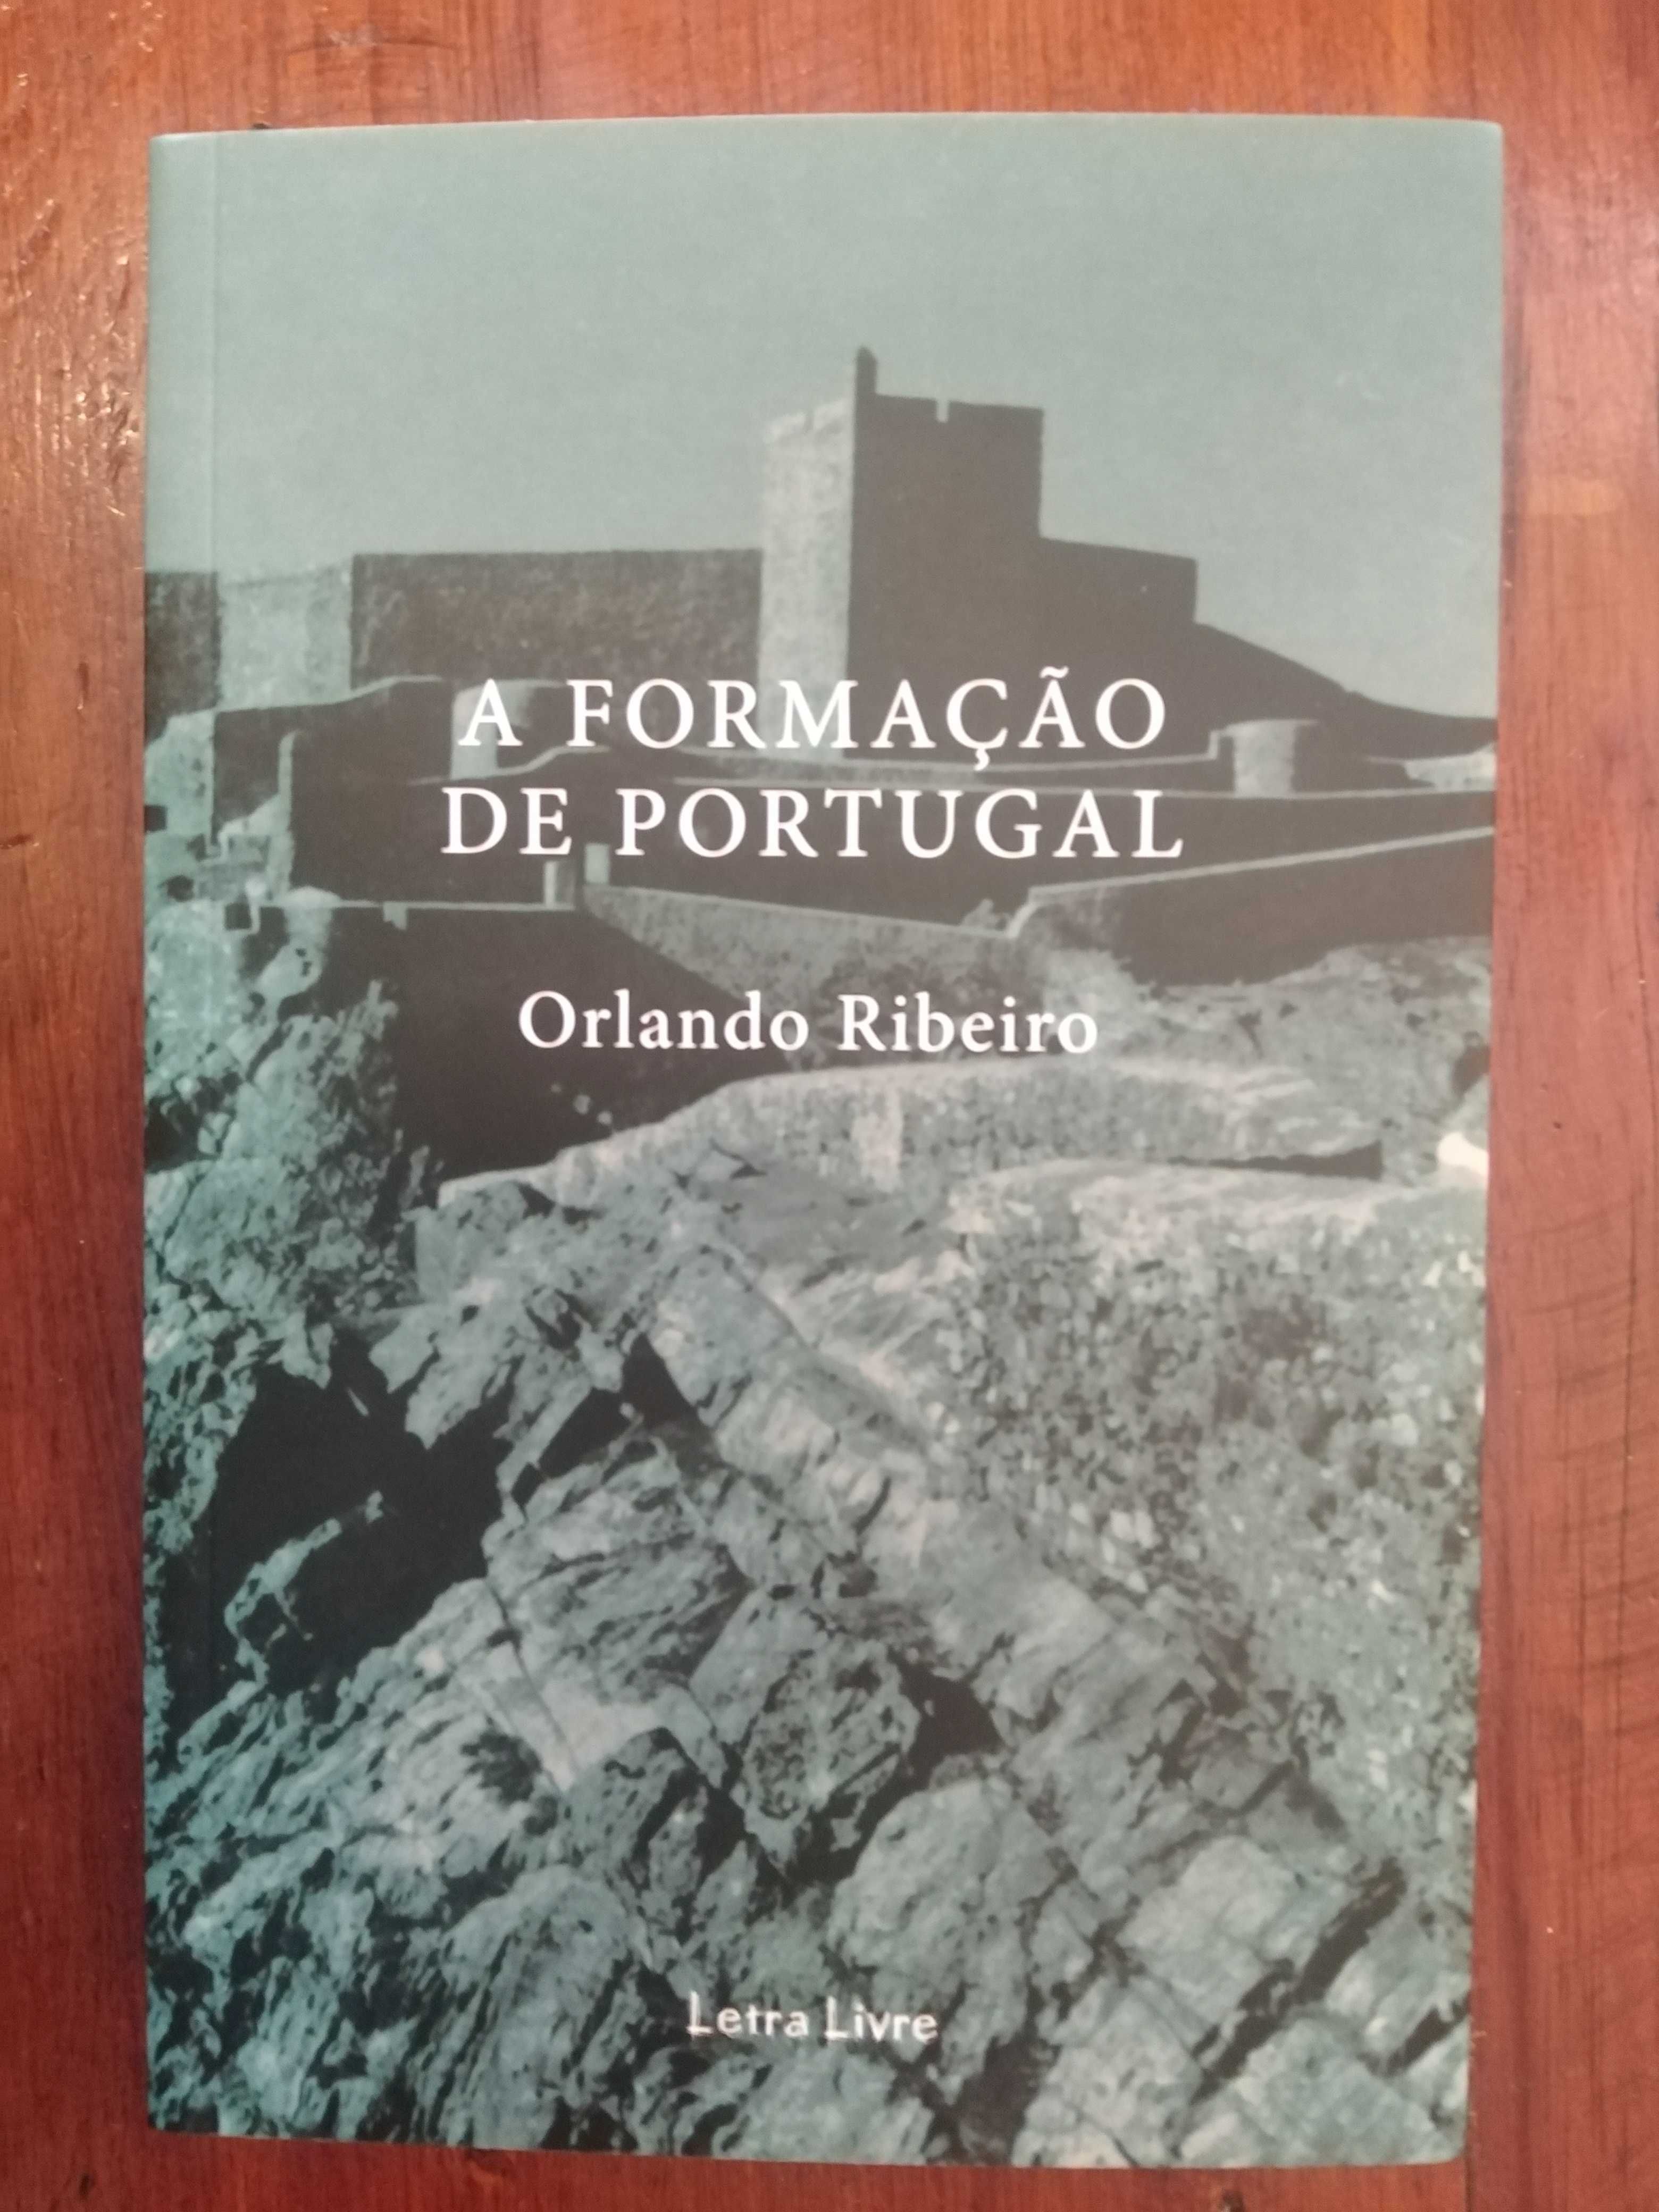 Orlando Ribeiro - A formação de Portugal